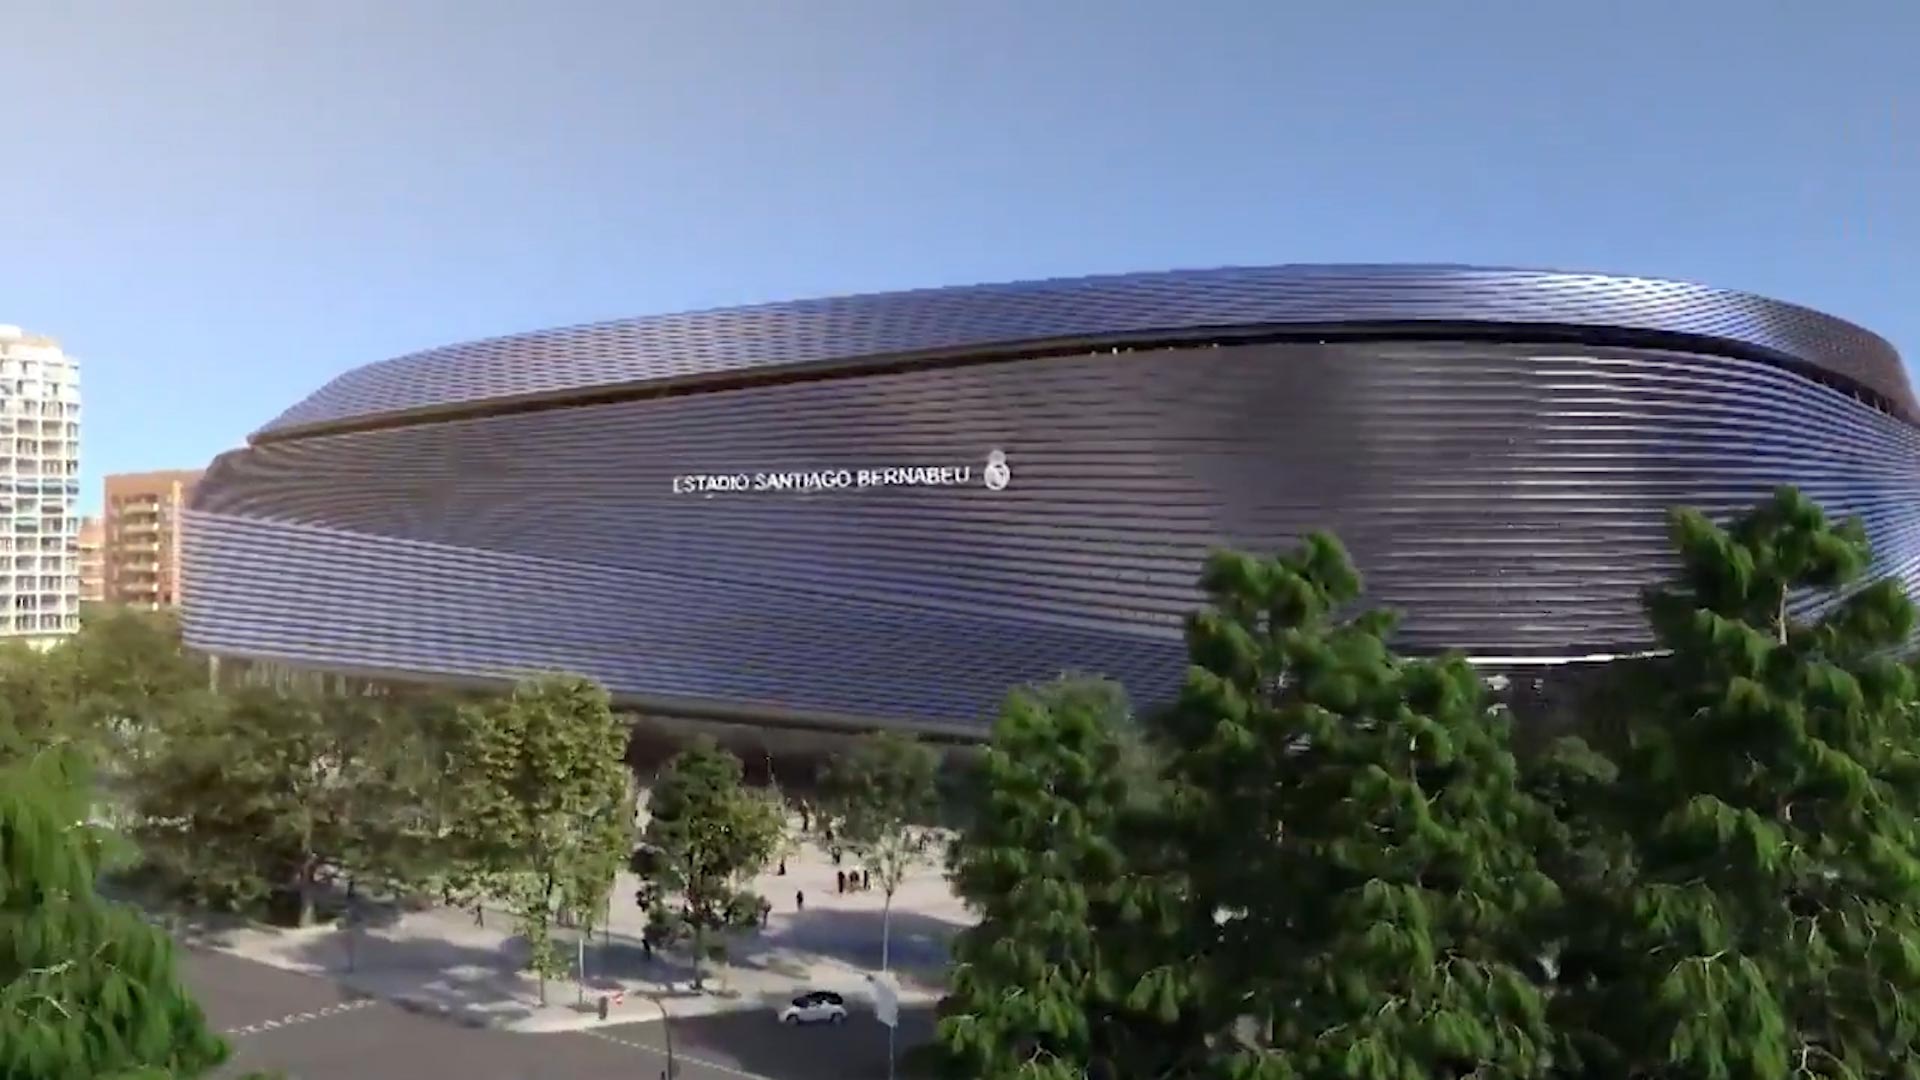 Impactantes imágenes del nuevo Santiago Bernabéu: Así se mueven dos tramos del techo retráctil de la casa del Real Madrid